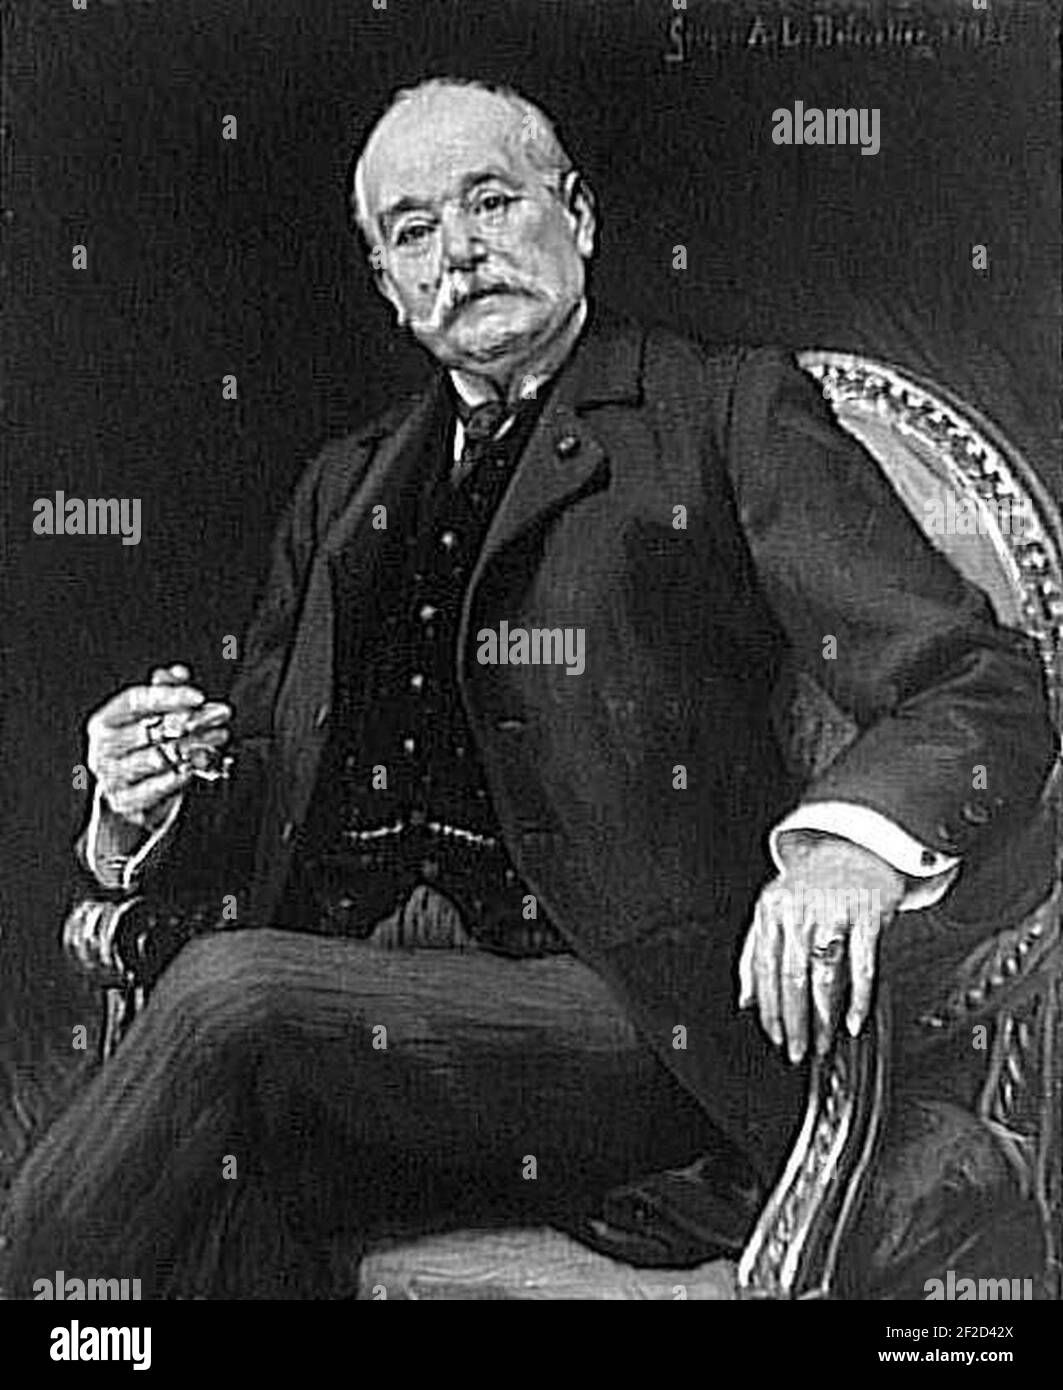 Portrait de M. Alain Chartier 1908 Stock Photo - Alamy